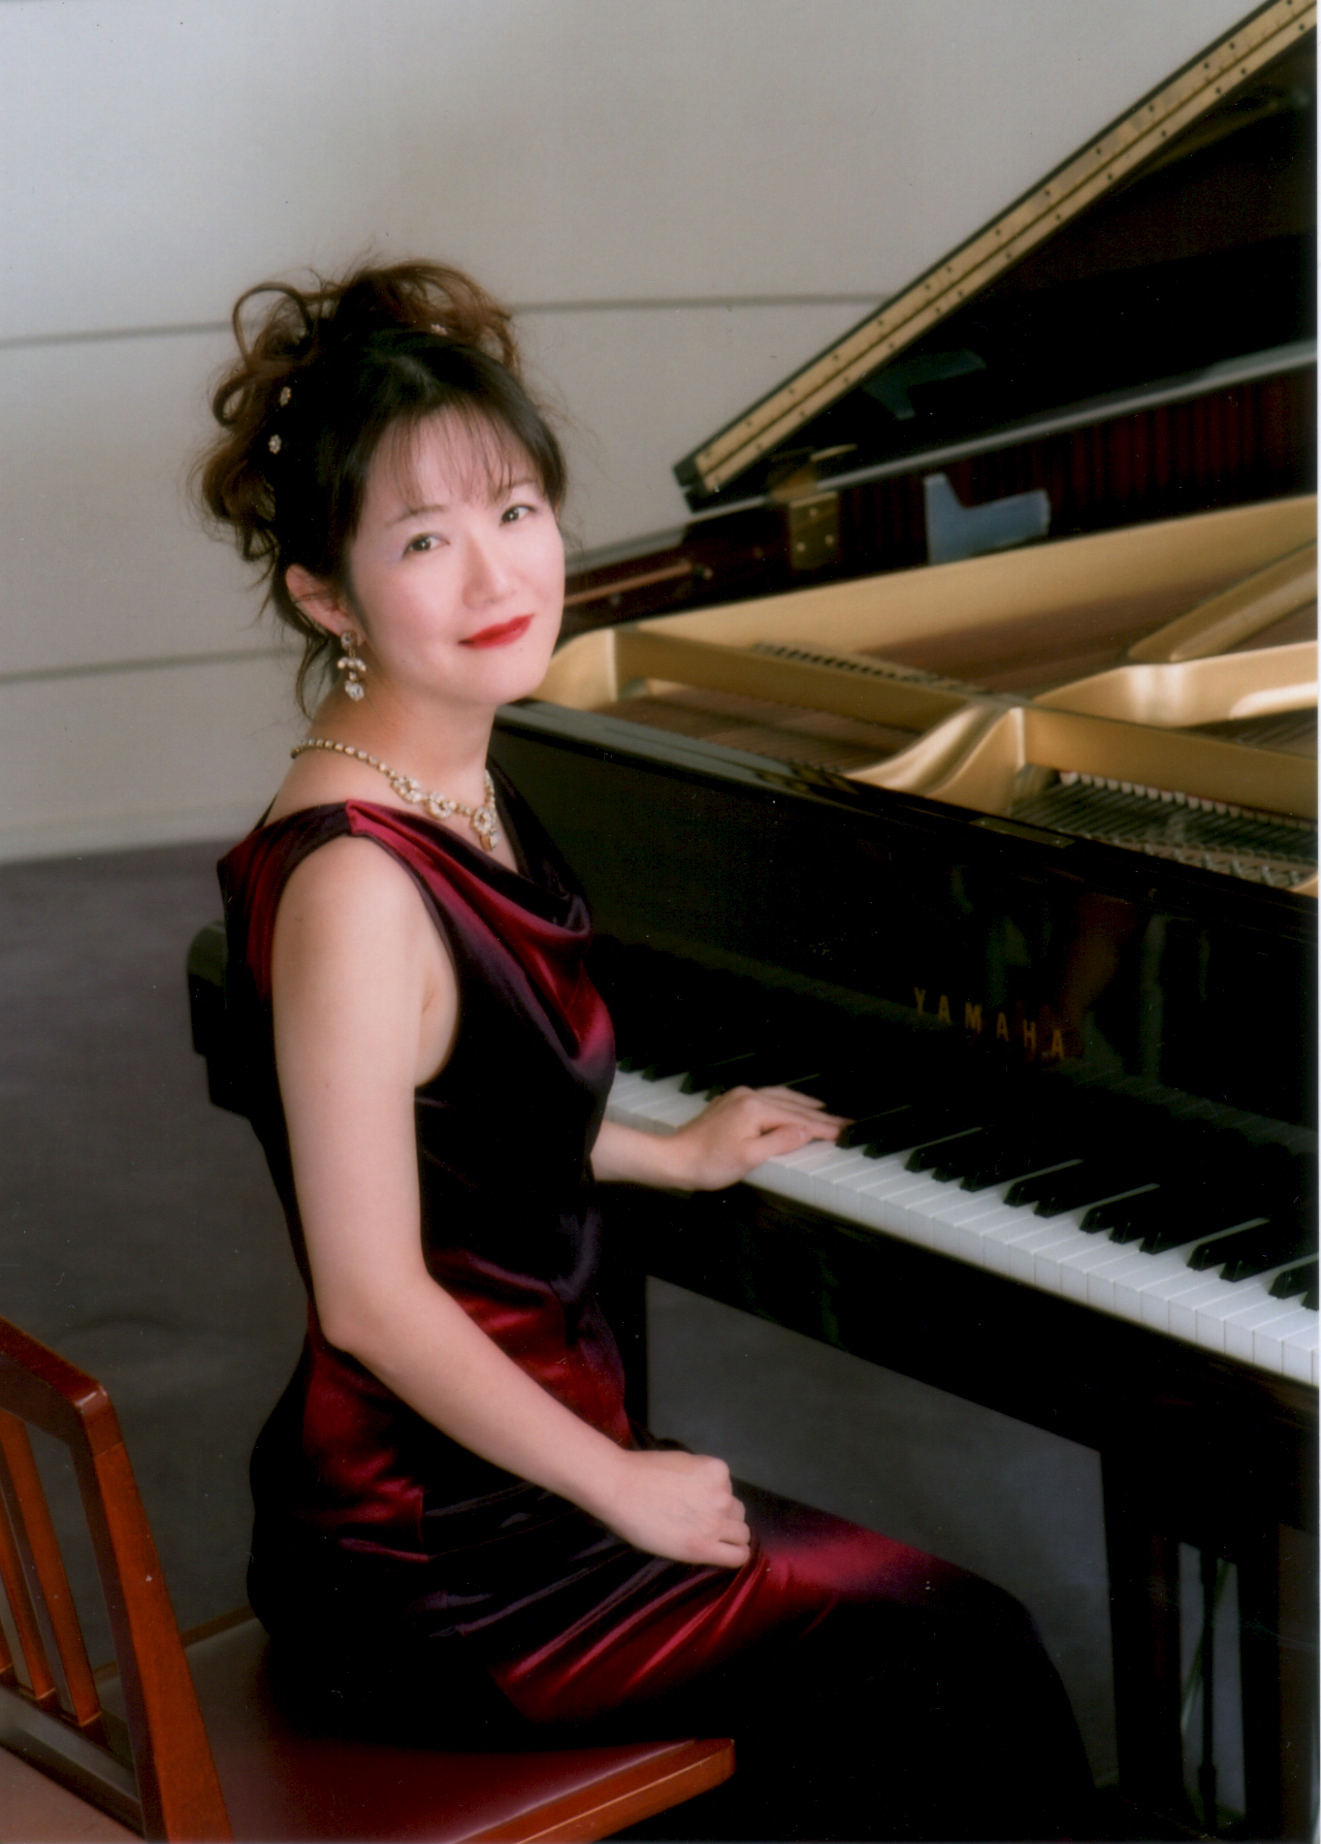 松山市のピアノレッスン | ピアニストが指導するピアノ教室『林 澄子ピアノアカデミー』